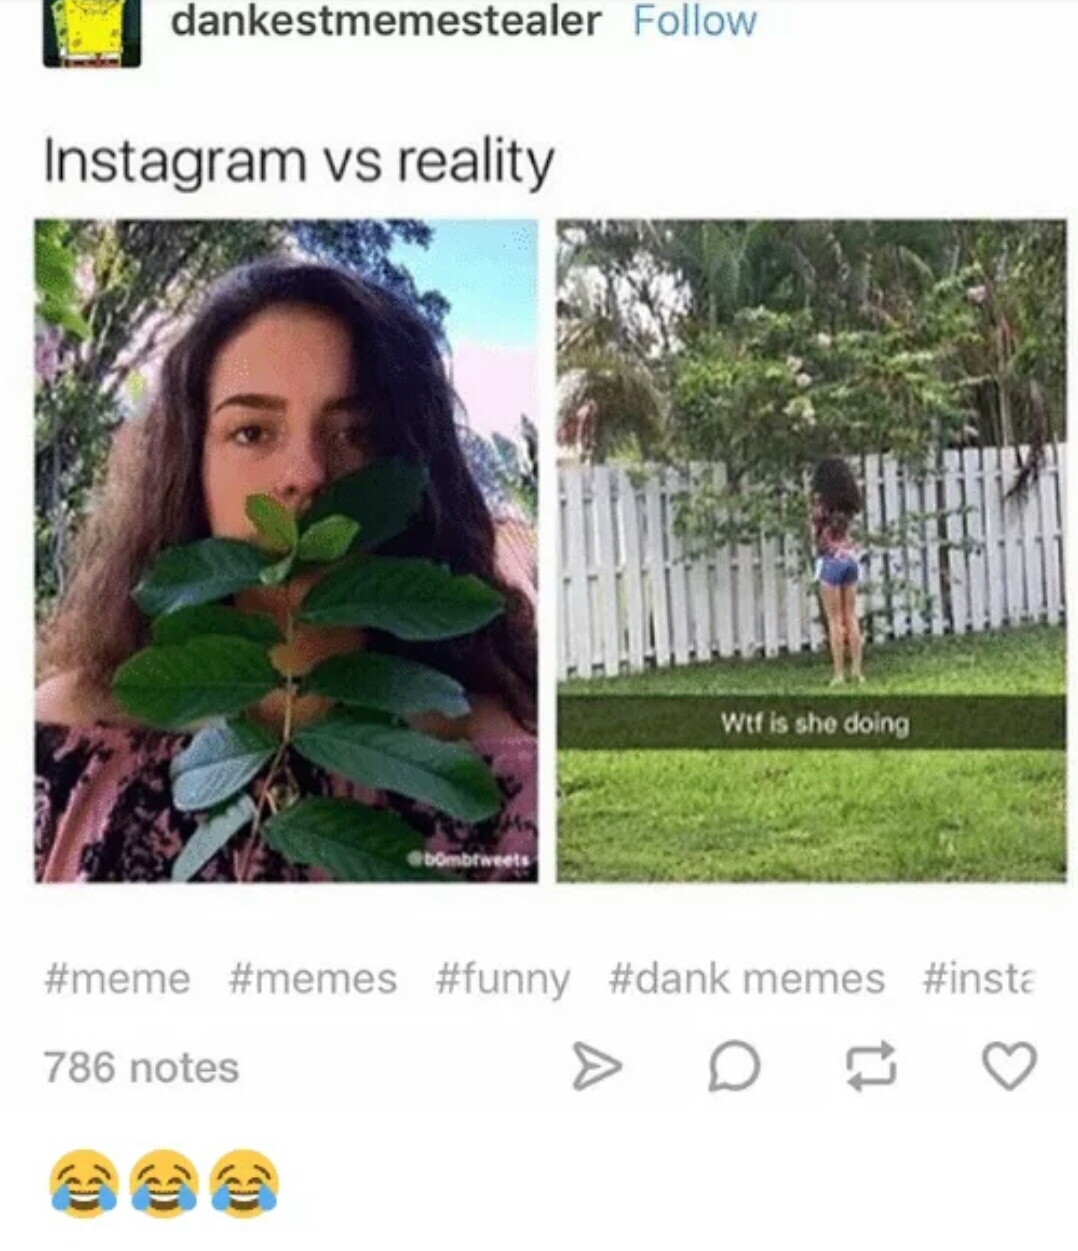 instagram vs reality meme - dankestmemestealer Instagram vs reality wtf is she doing bombtweets memes 786 notes